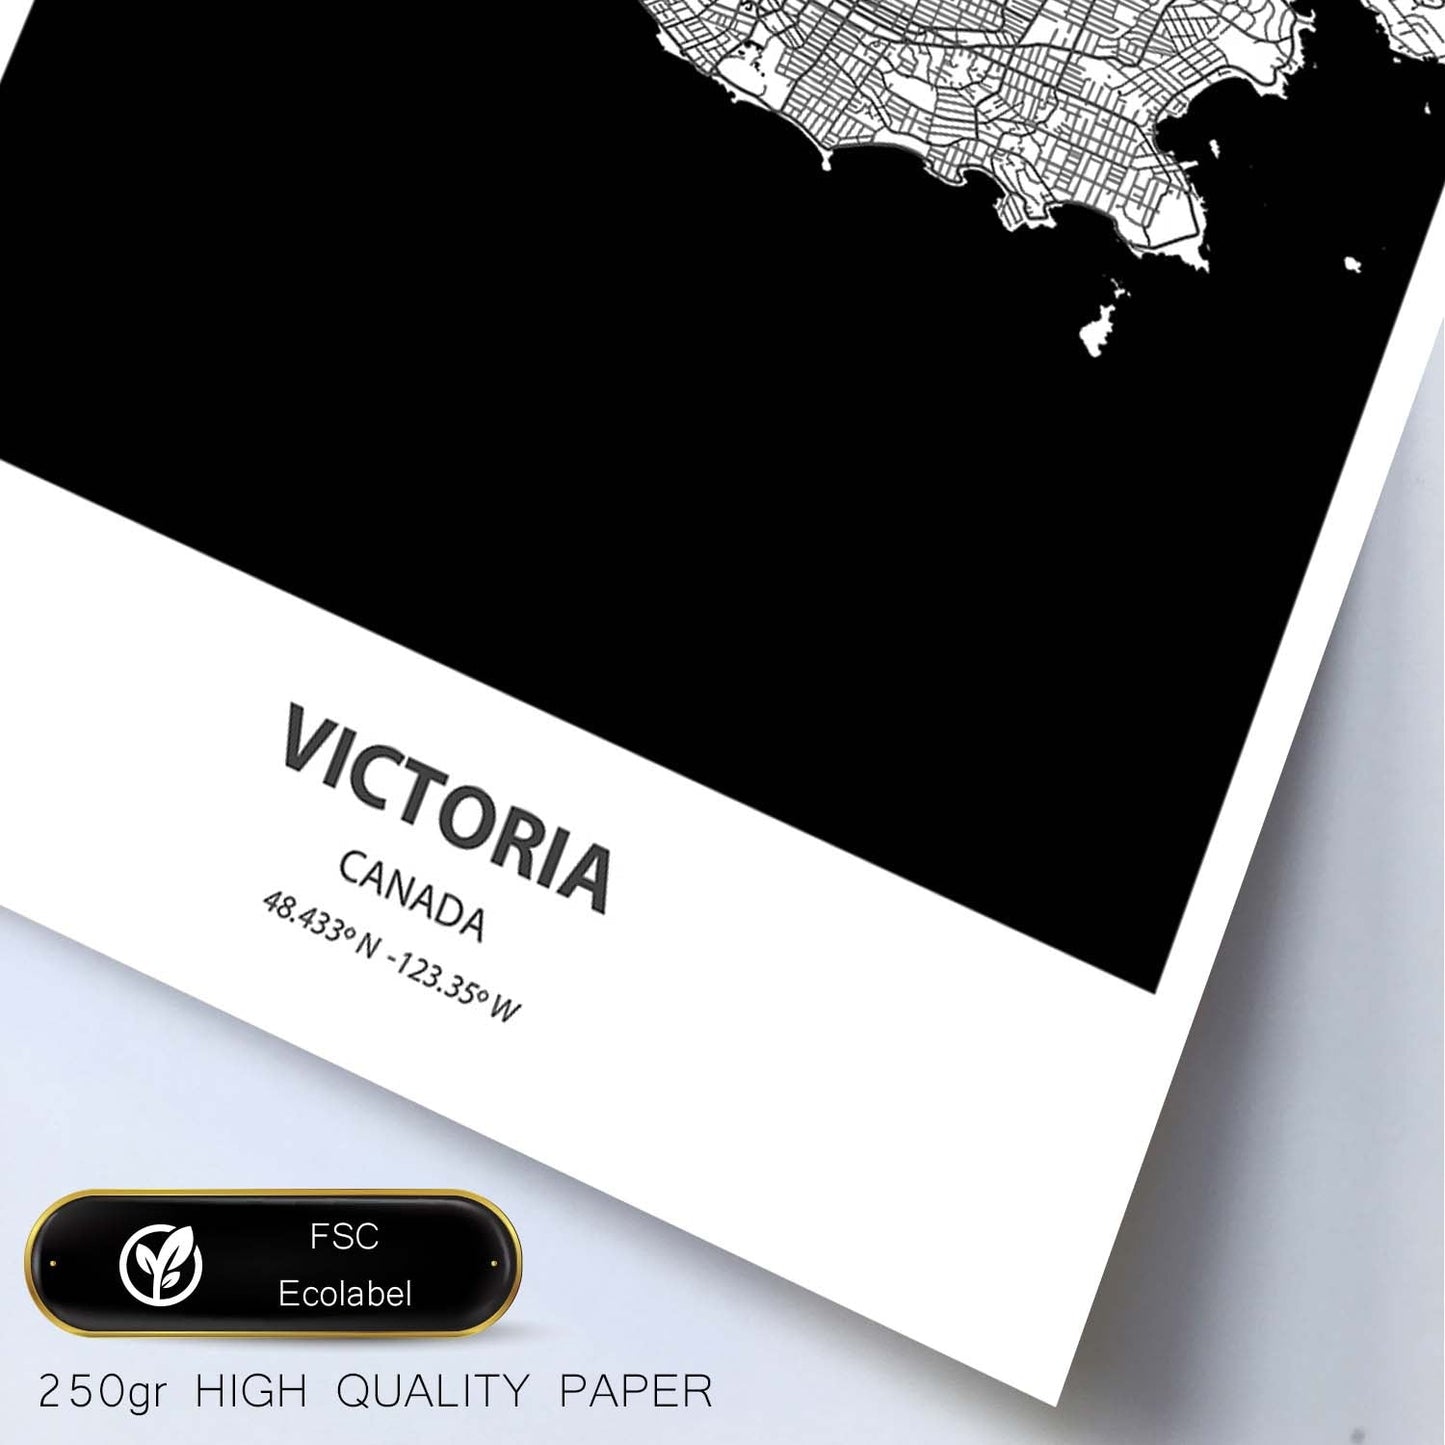 Poster con mapa de Victoria - Canada. Láminas de ciudades de Canada con mares y ríos en color negro.-Artwork-Nacnic-Nacnic Estudio SL